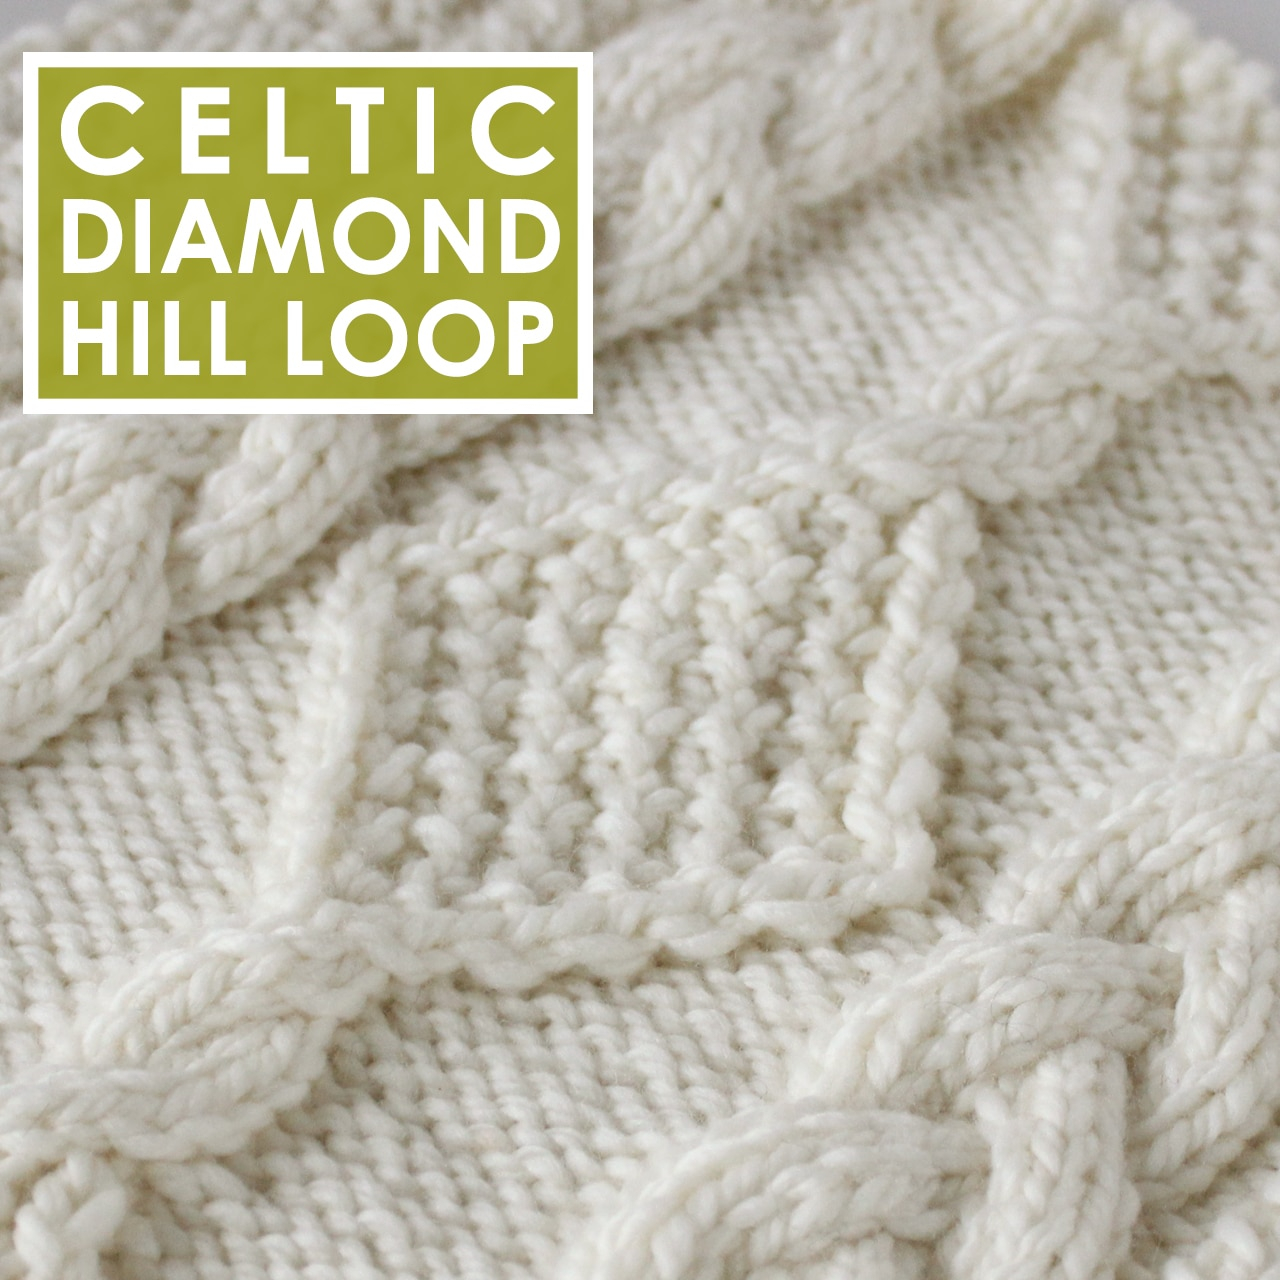 Irish Knitting Patterns Free Diamond Hill Loop Celtic Cable Knitting Pattern Studio Knit